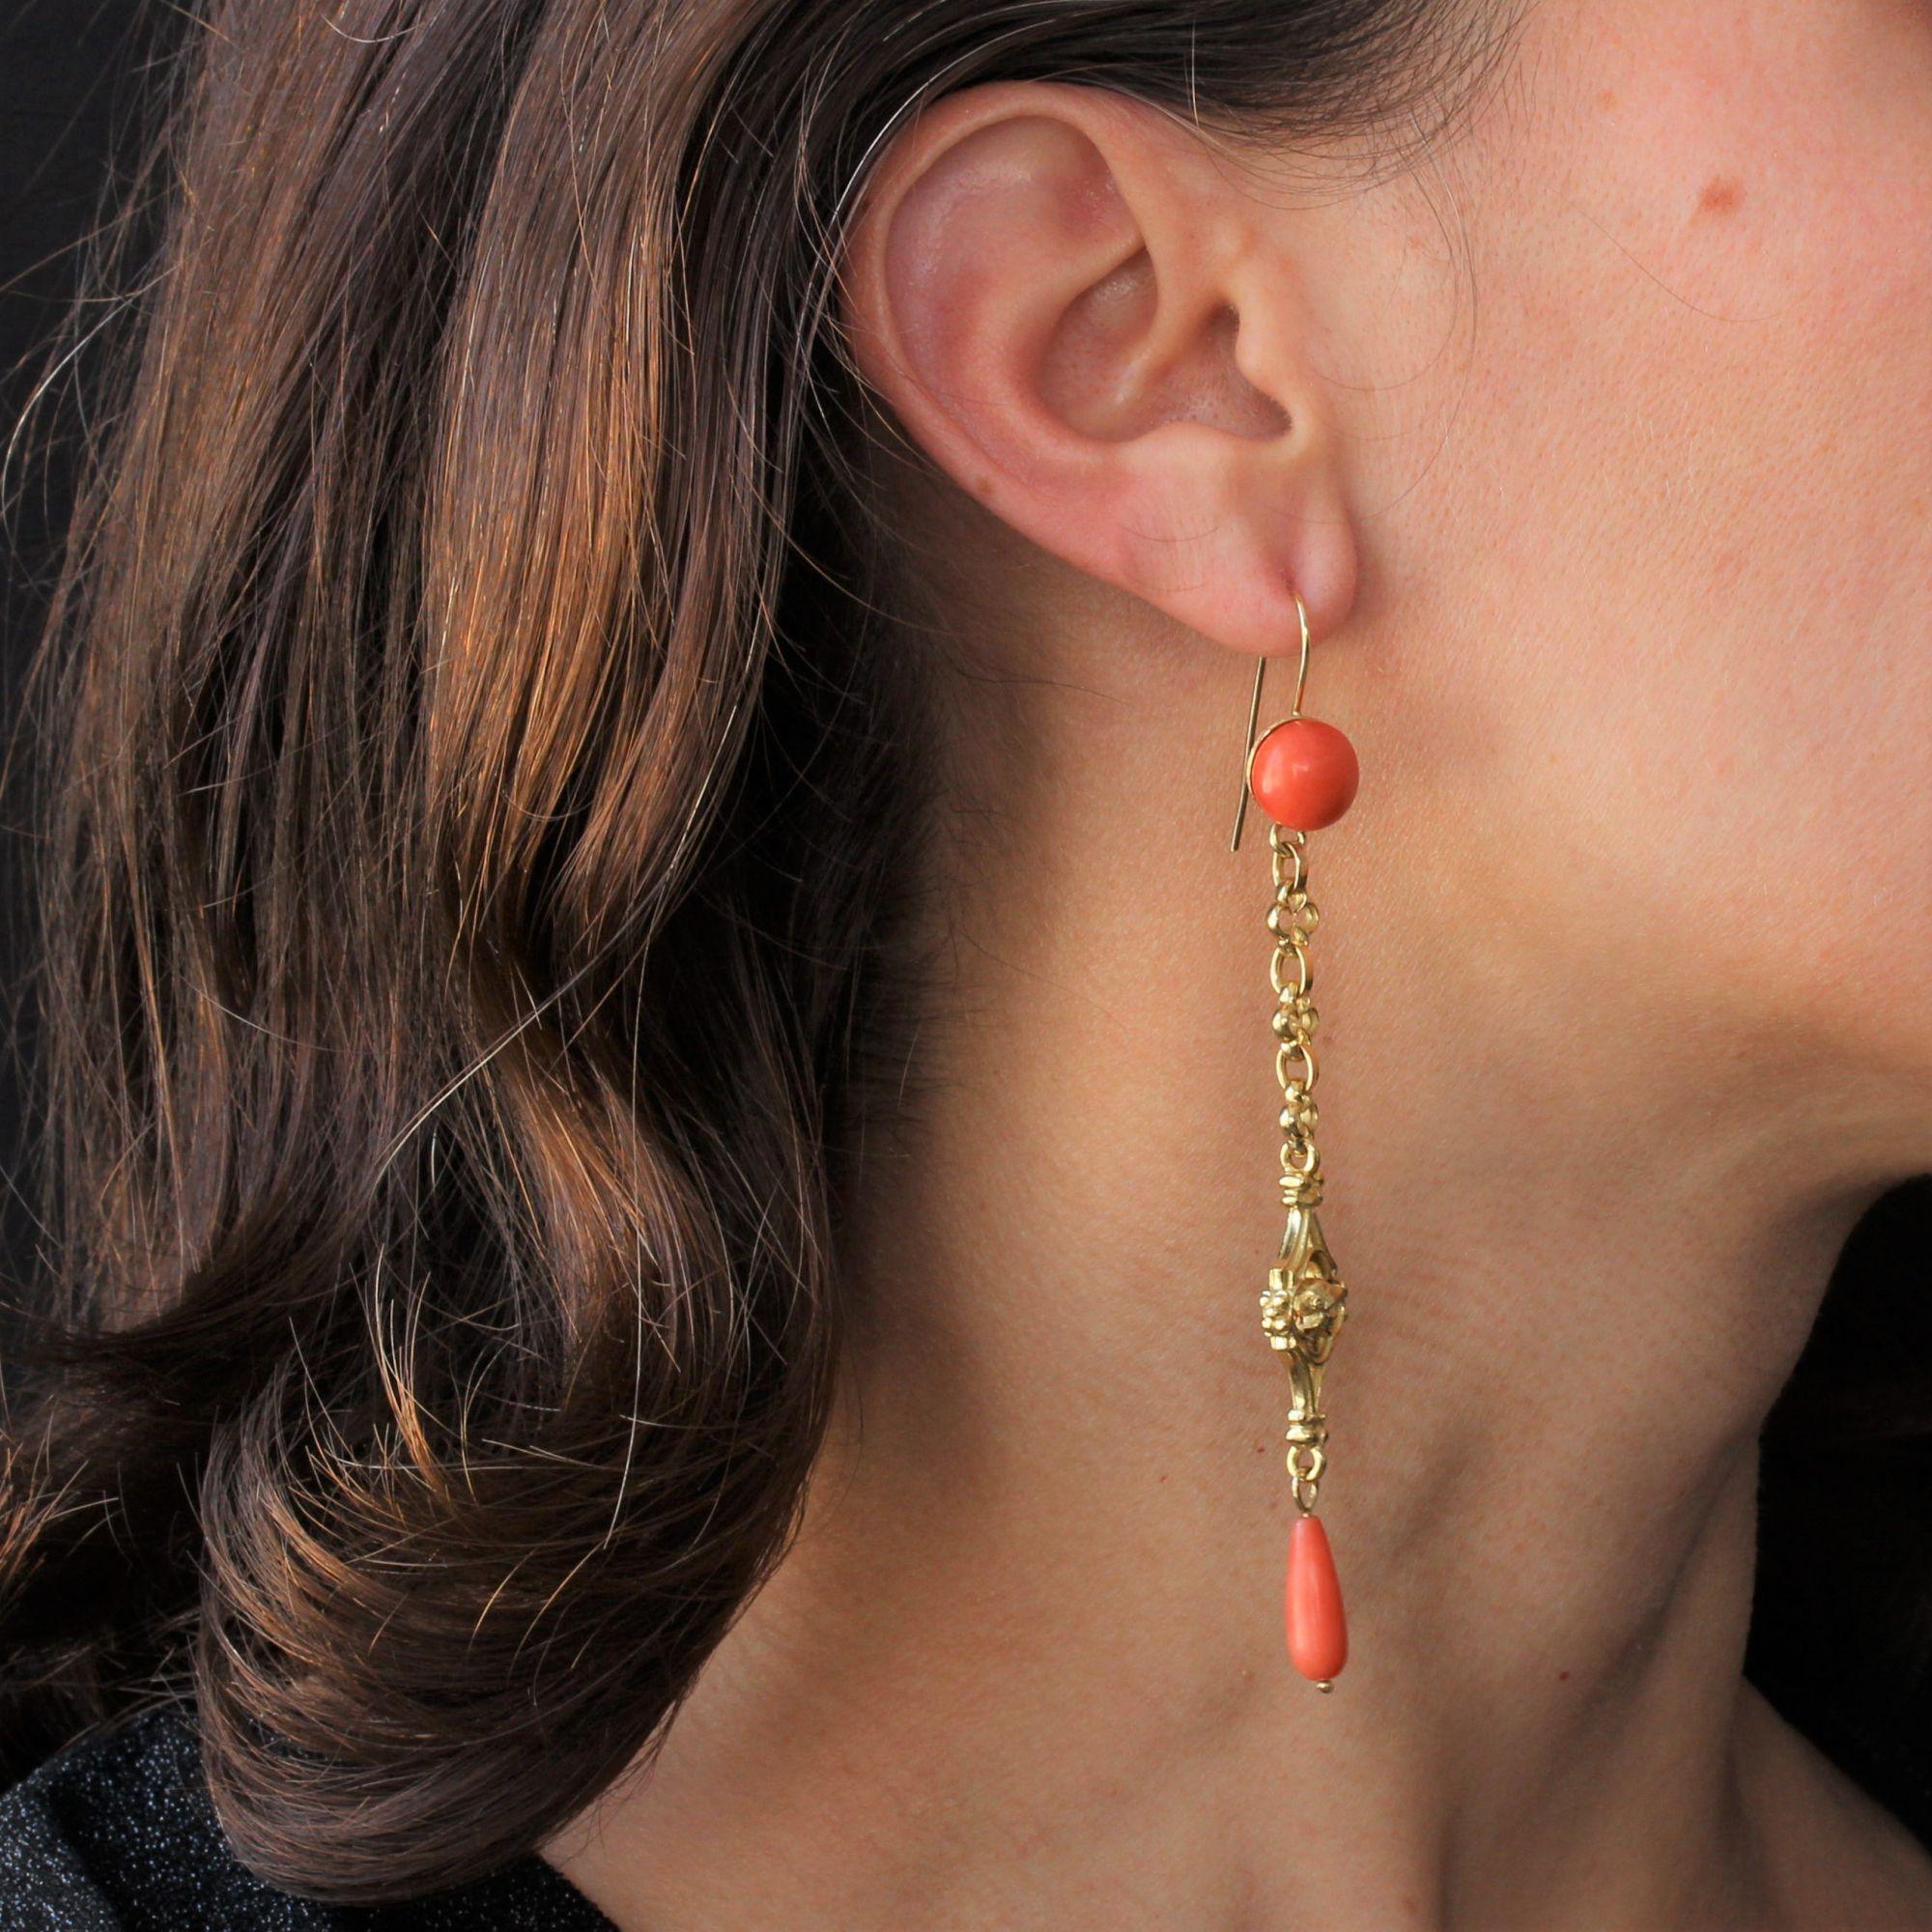 Für gepiercte Ohren.
Ohrring aus 18 Karat Gelbgold.
Jeder antike Ohrring besteht aus einem Korallencabochon, auf dem gotische Motive mit einem Ritterkopf abgebildet sind. Ein Korallentropfen an der Basis des Anhängers vollendet das antike